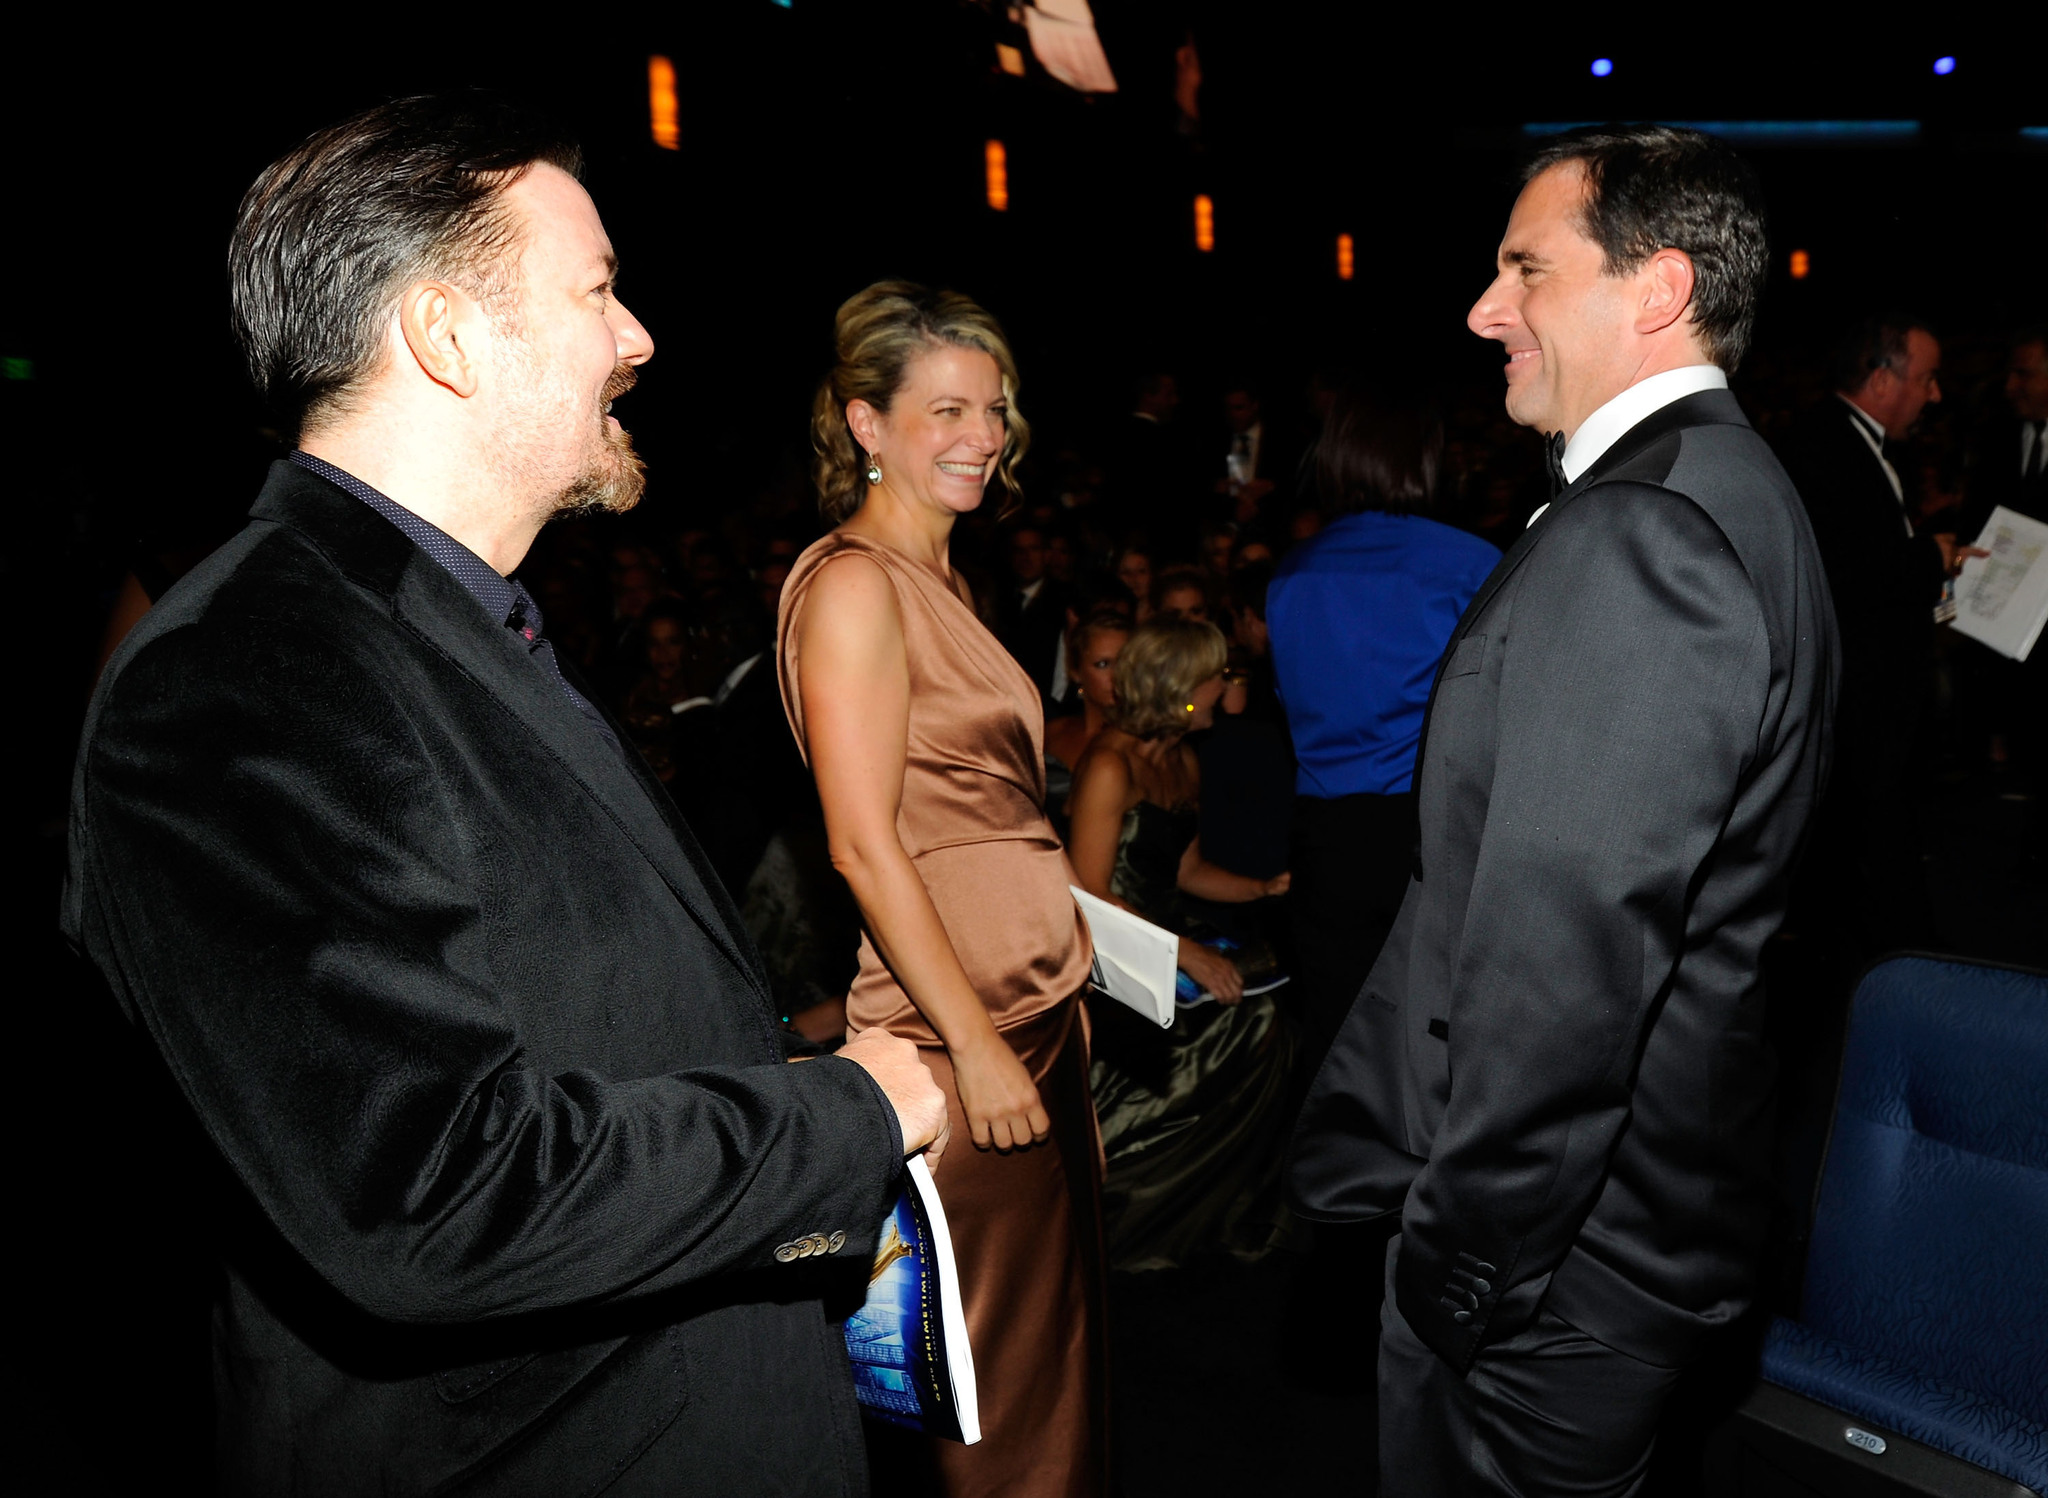 Steve Carell, Jane Fallon and Ricky Gervais